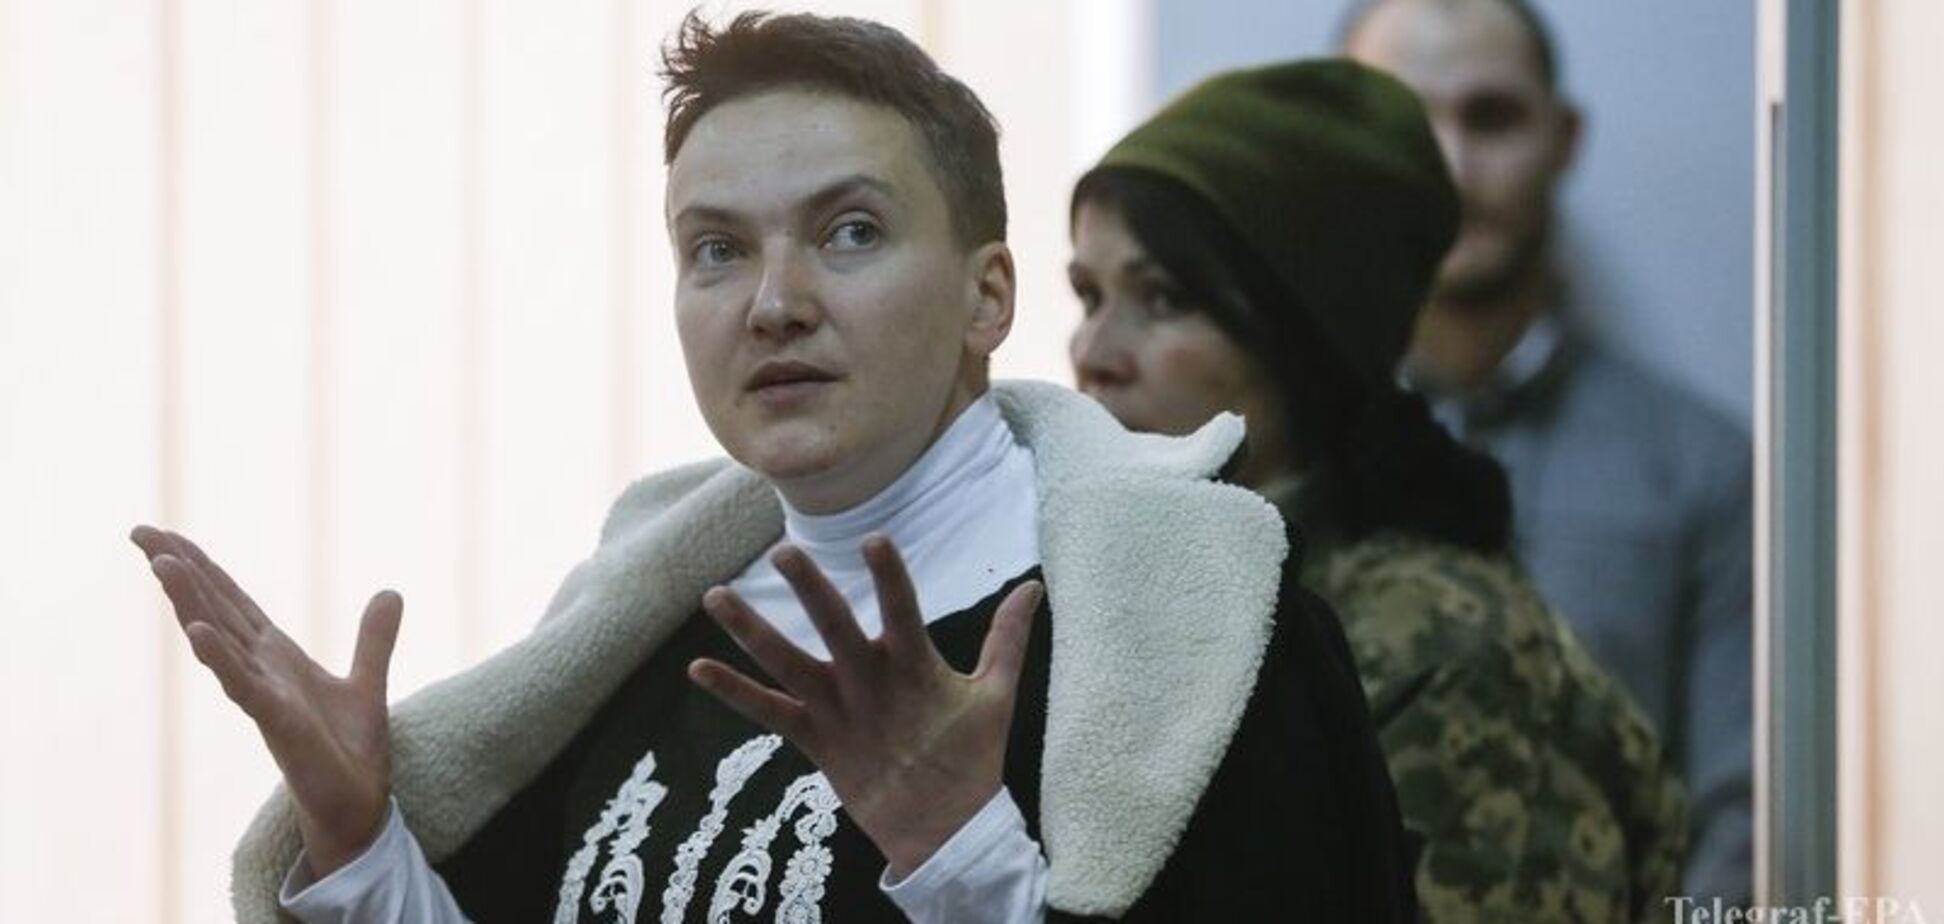 Як Захід відреагує на арешт Савченко: прогноз британського експерта